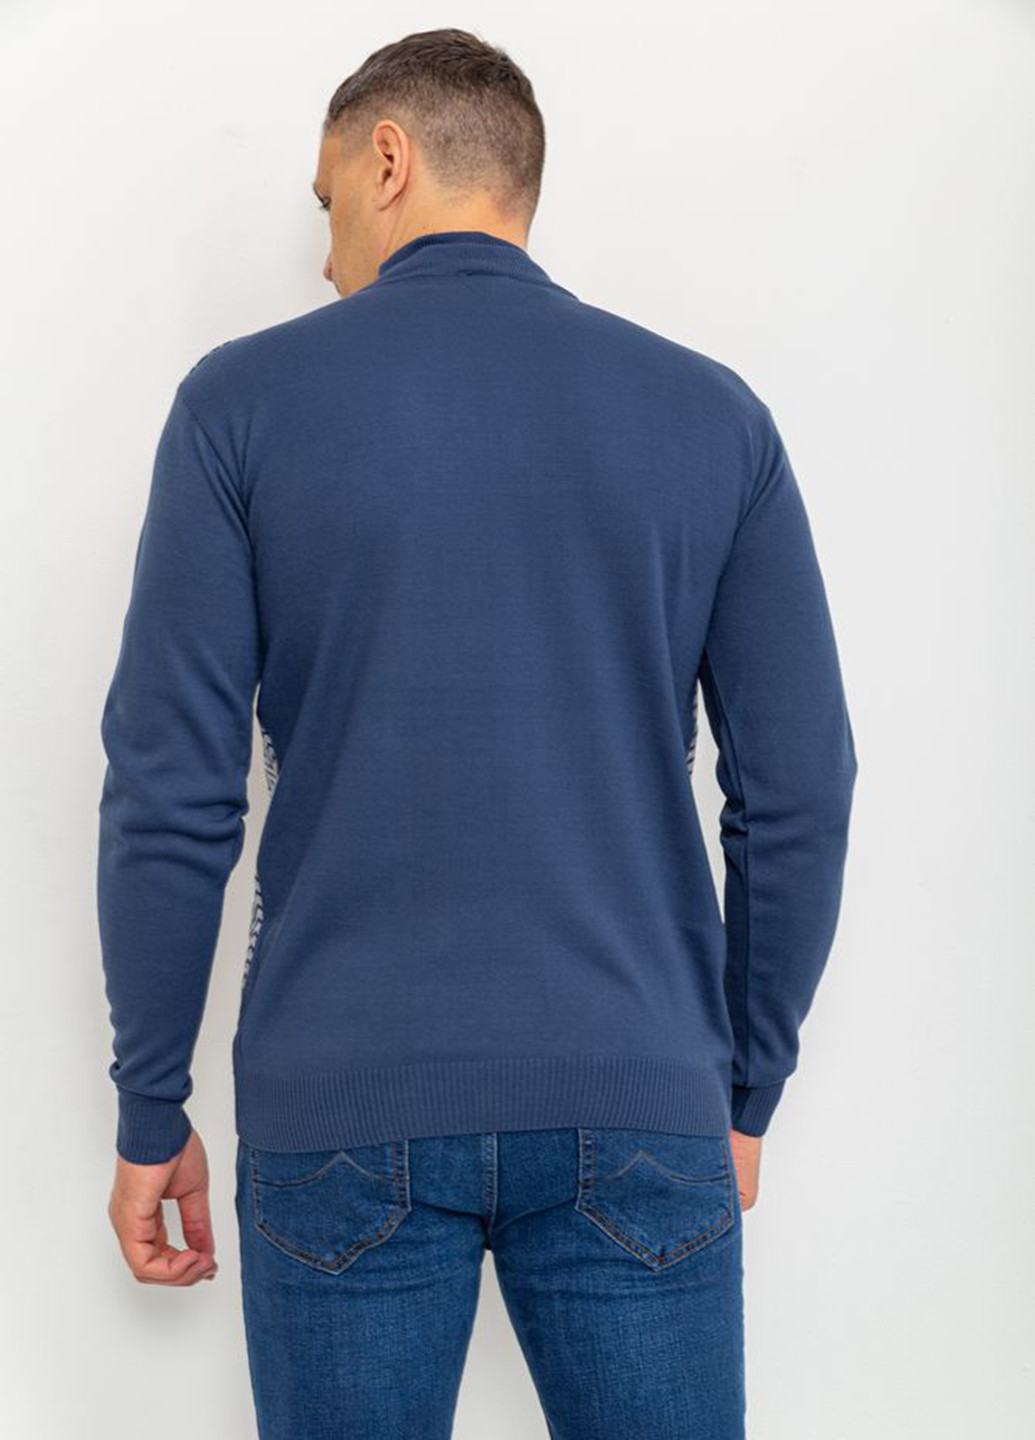 Светло-синий зимний свитер Ager